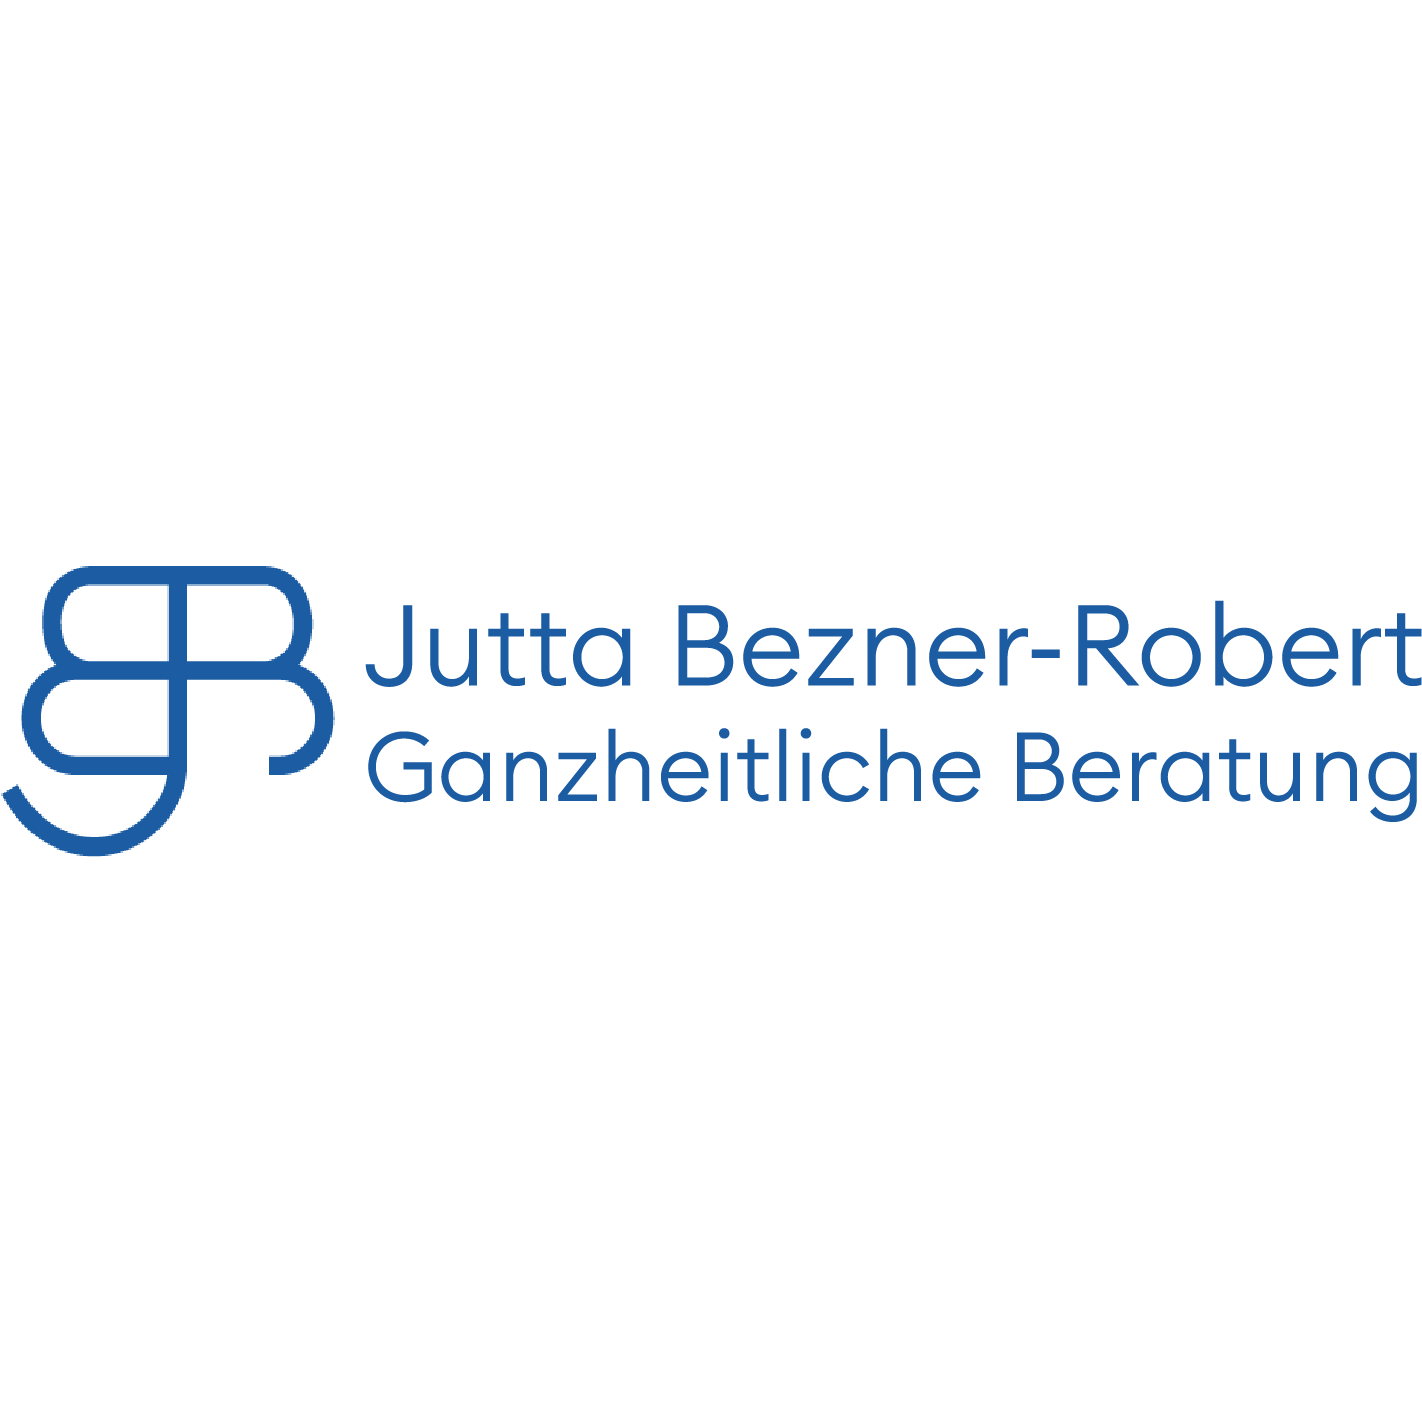 Jutta Bezner-Robert Ganzheitliche Beratung in Besigheim - Logo